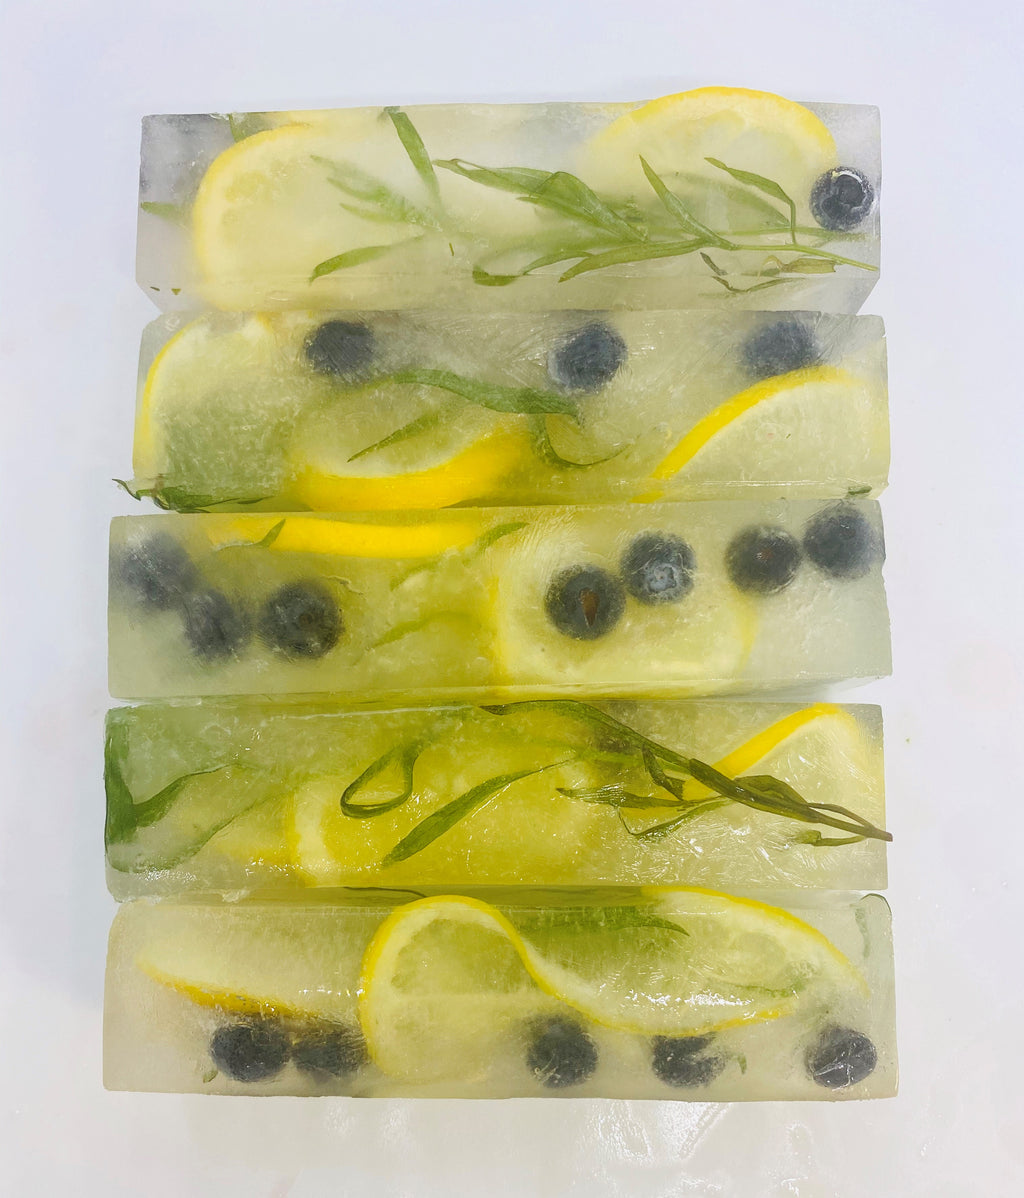 Lemonade/Limeade Cubes or Spears